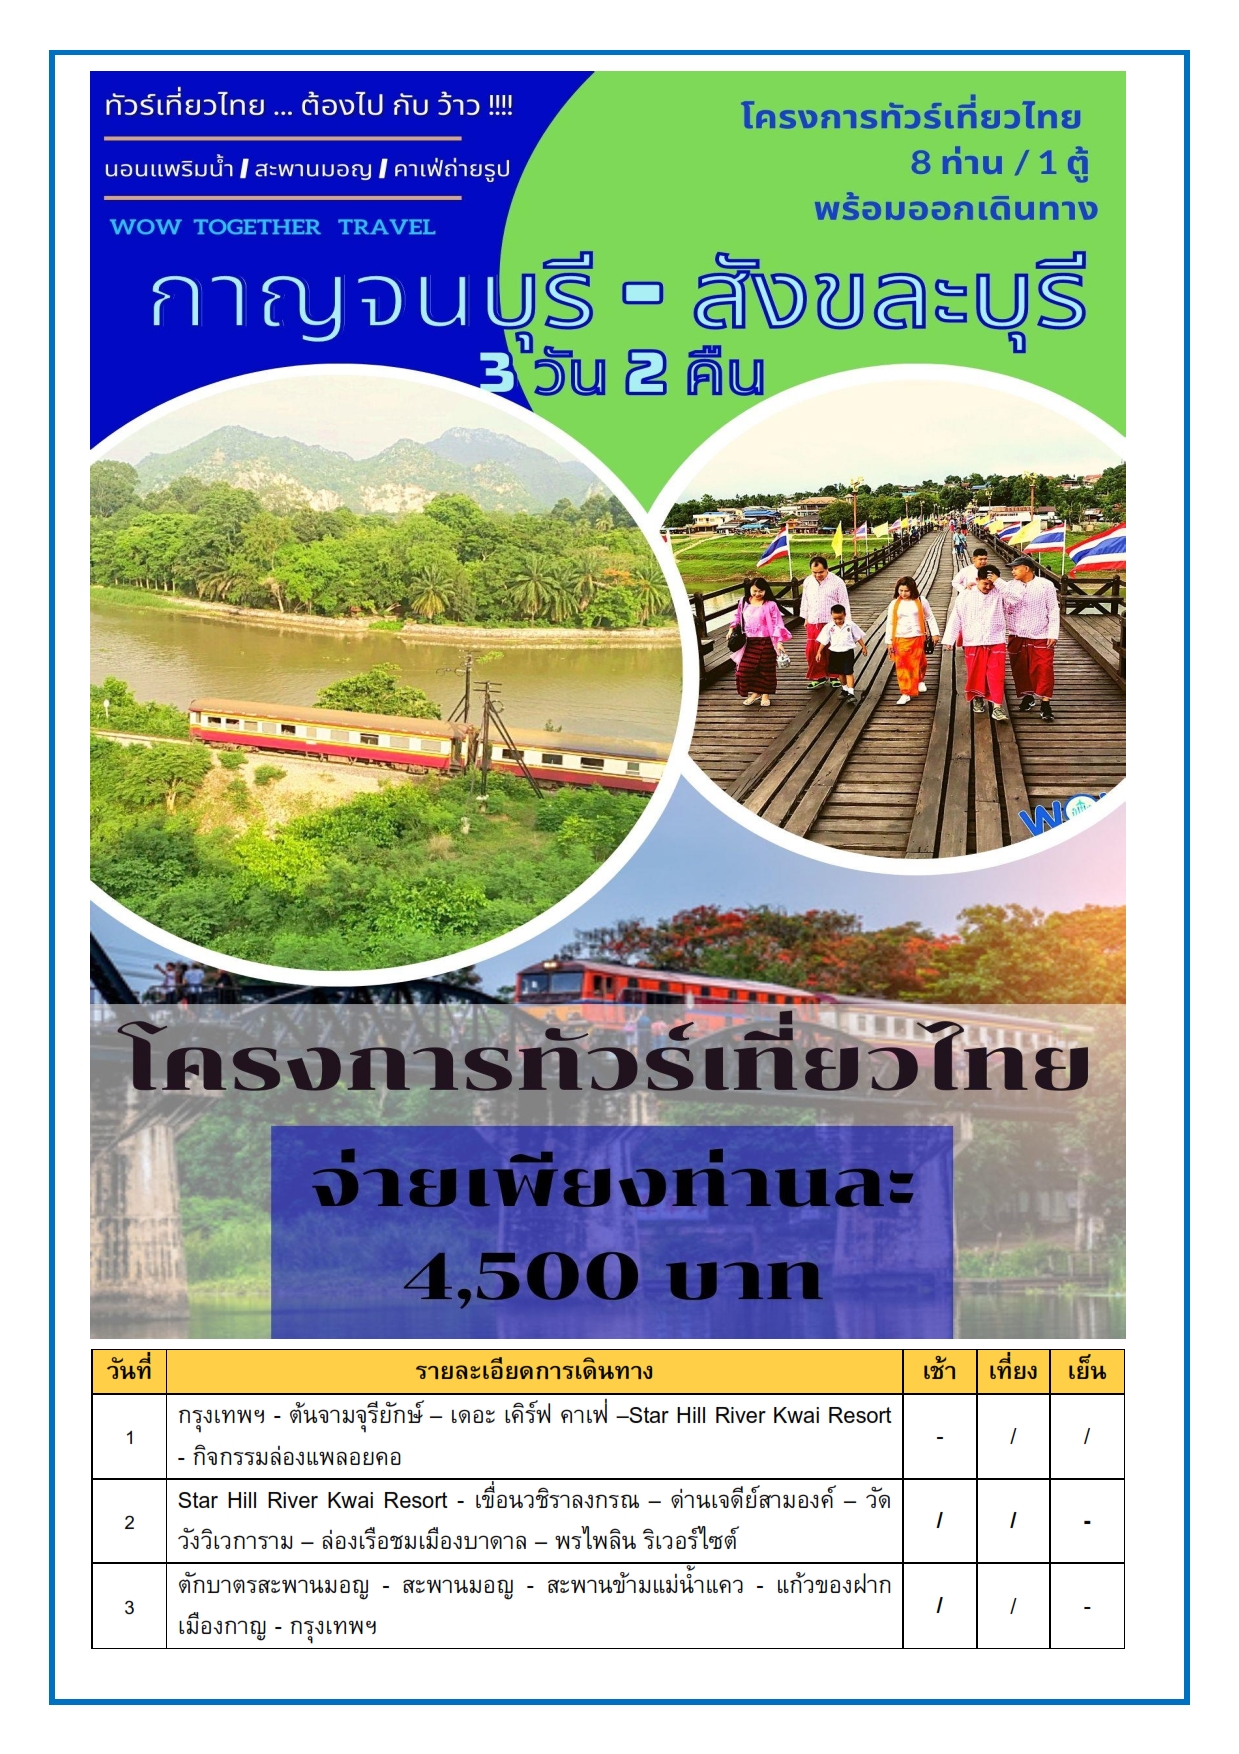 ทัวร์เที่ยวไทย กาญจนบุรี